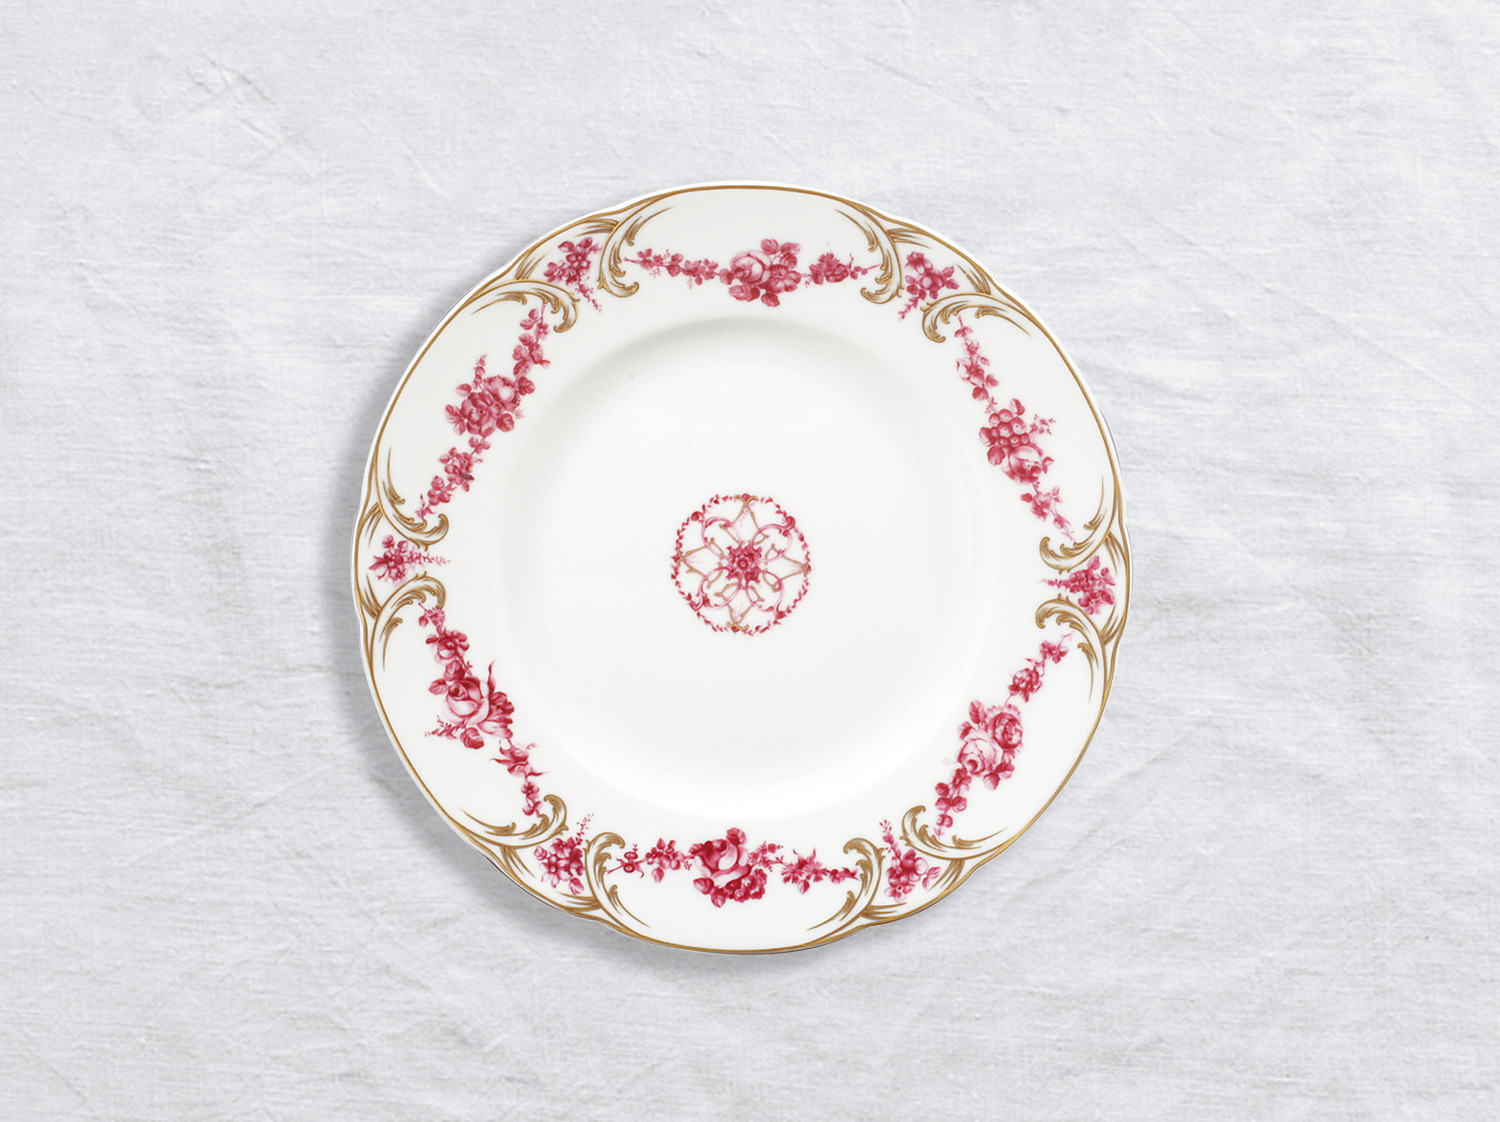 Assiette à dessert 21 cm en porcelaine de la collection Louis xv Bernardaud